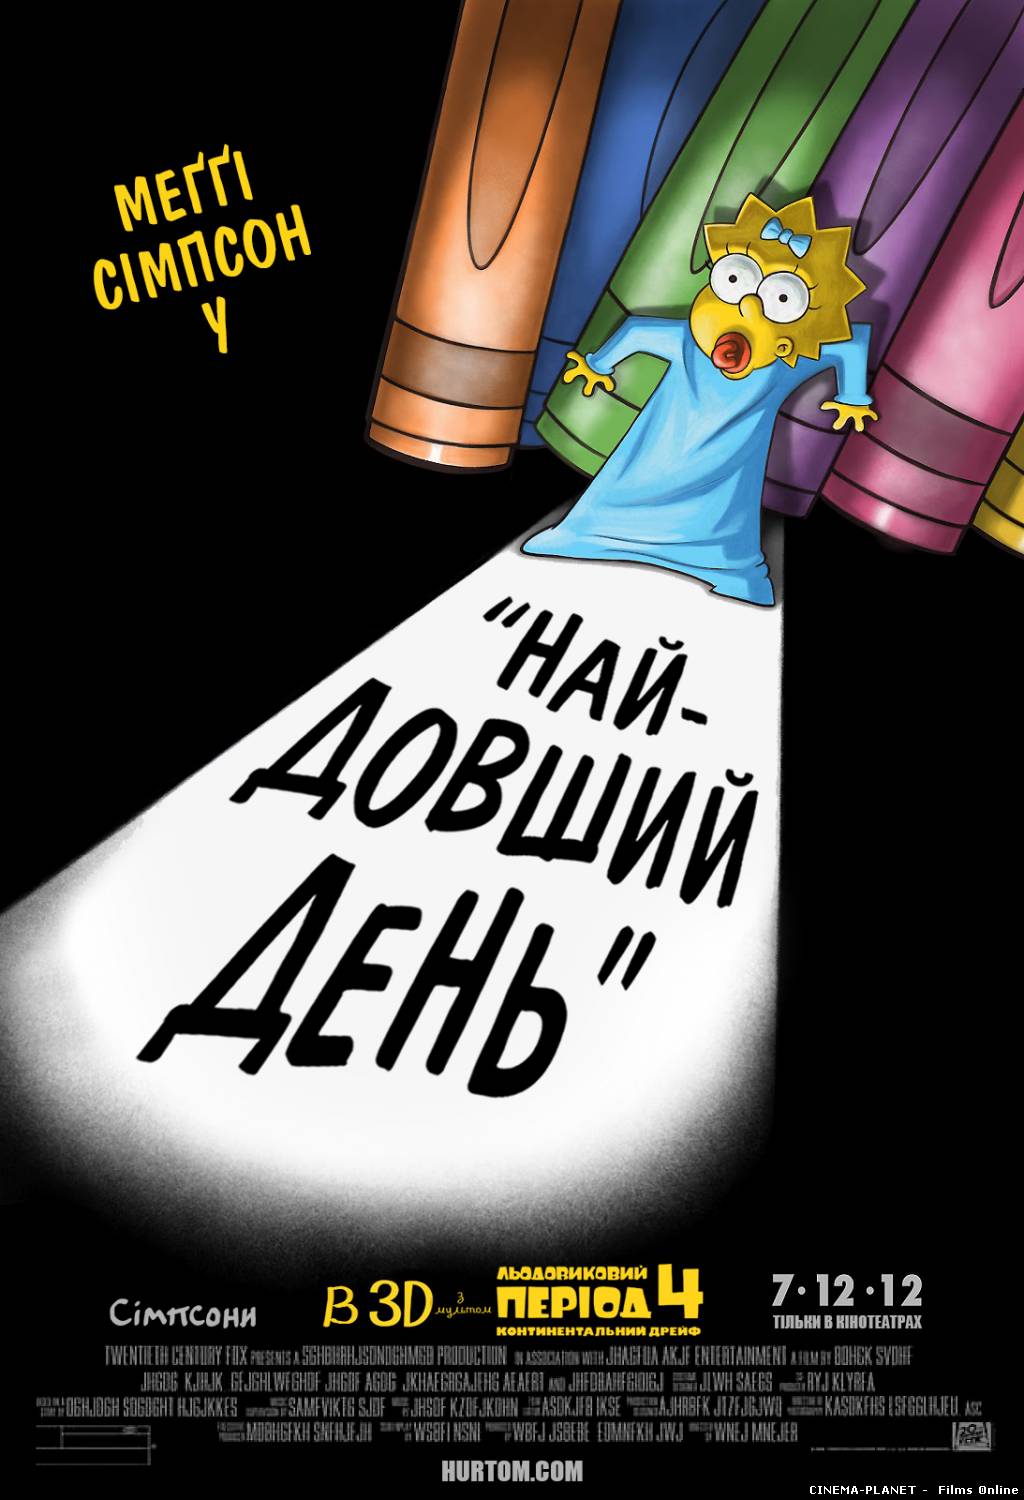 Сімпсони: найдовший день [HD 720p] / The Simpsons: The Longest Daycare [HD 720p] (2012) українською